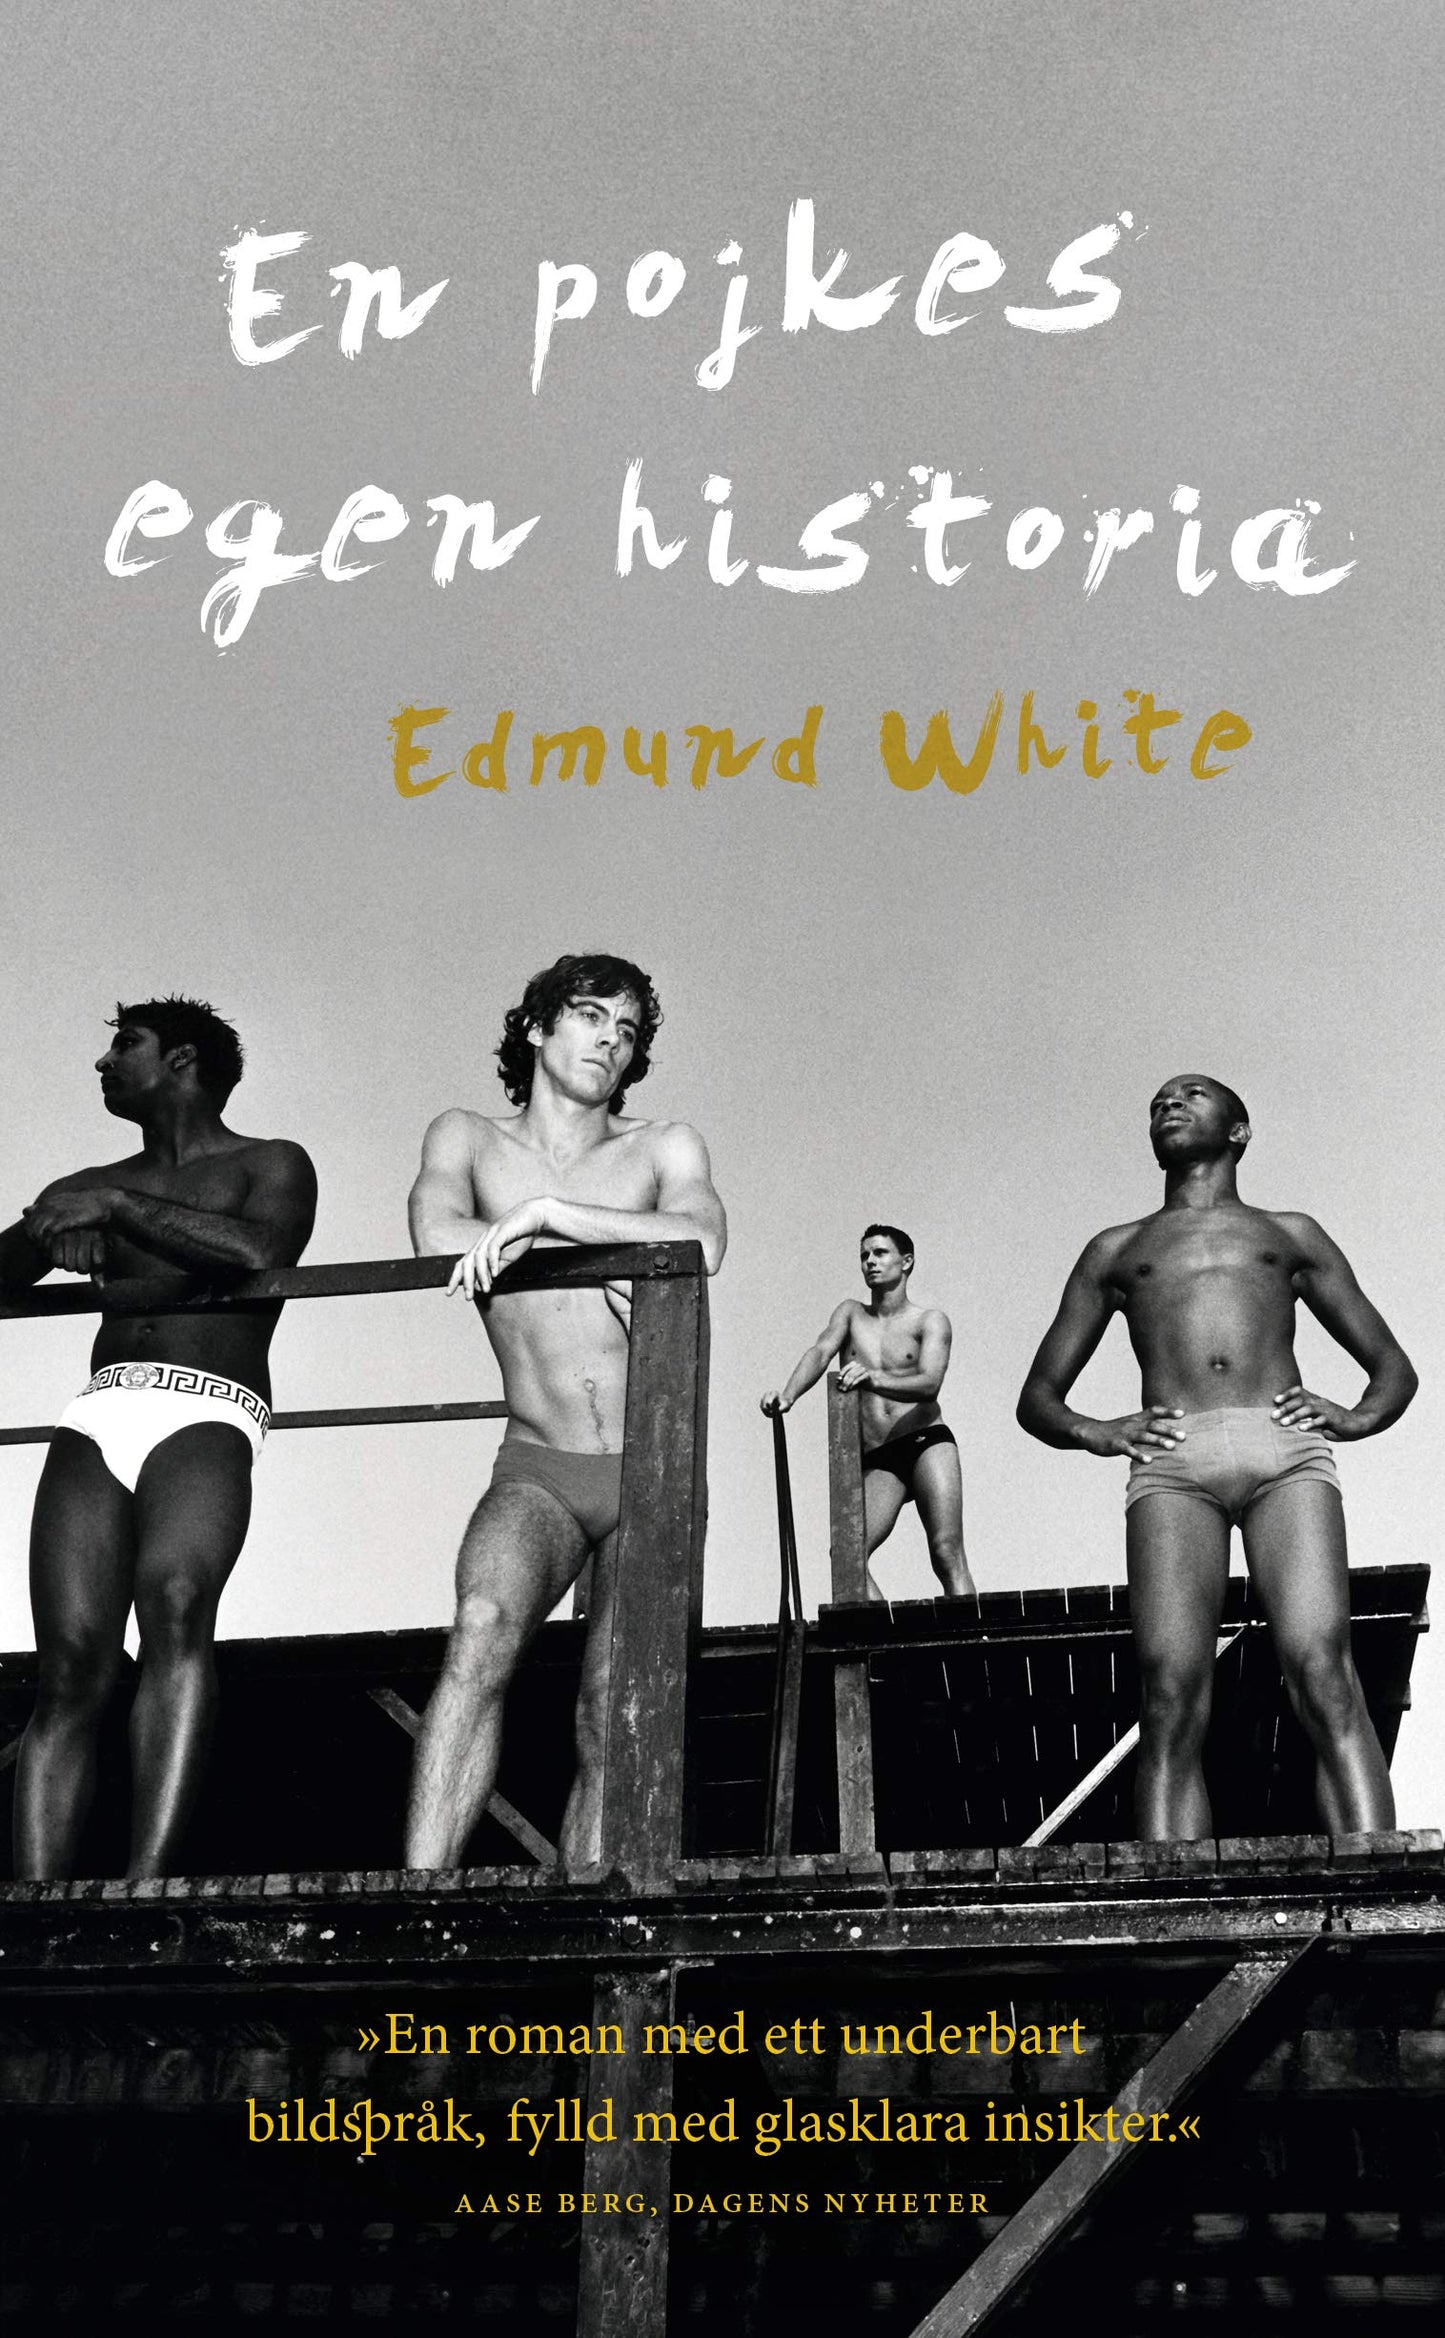 En pojkes egen historia - White, Edmund